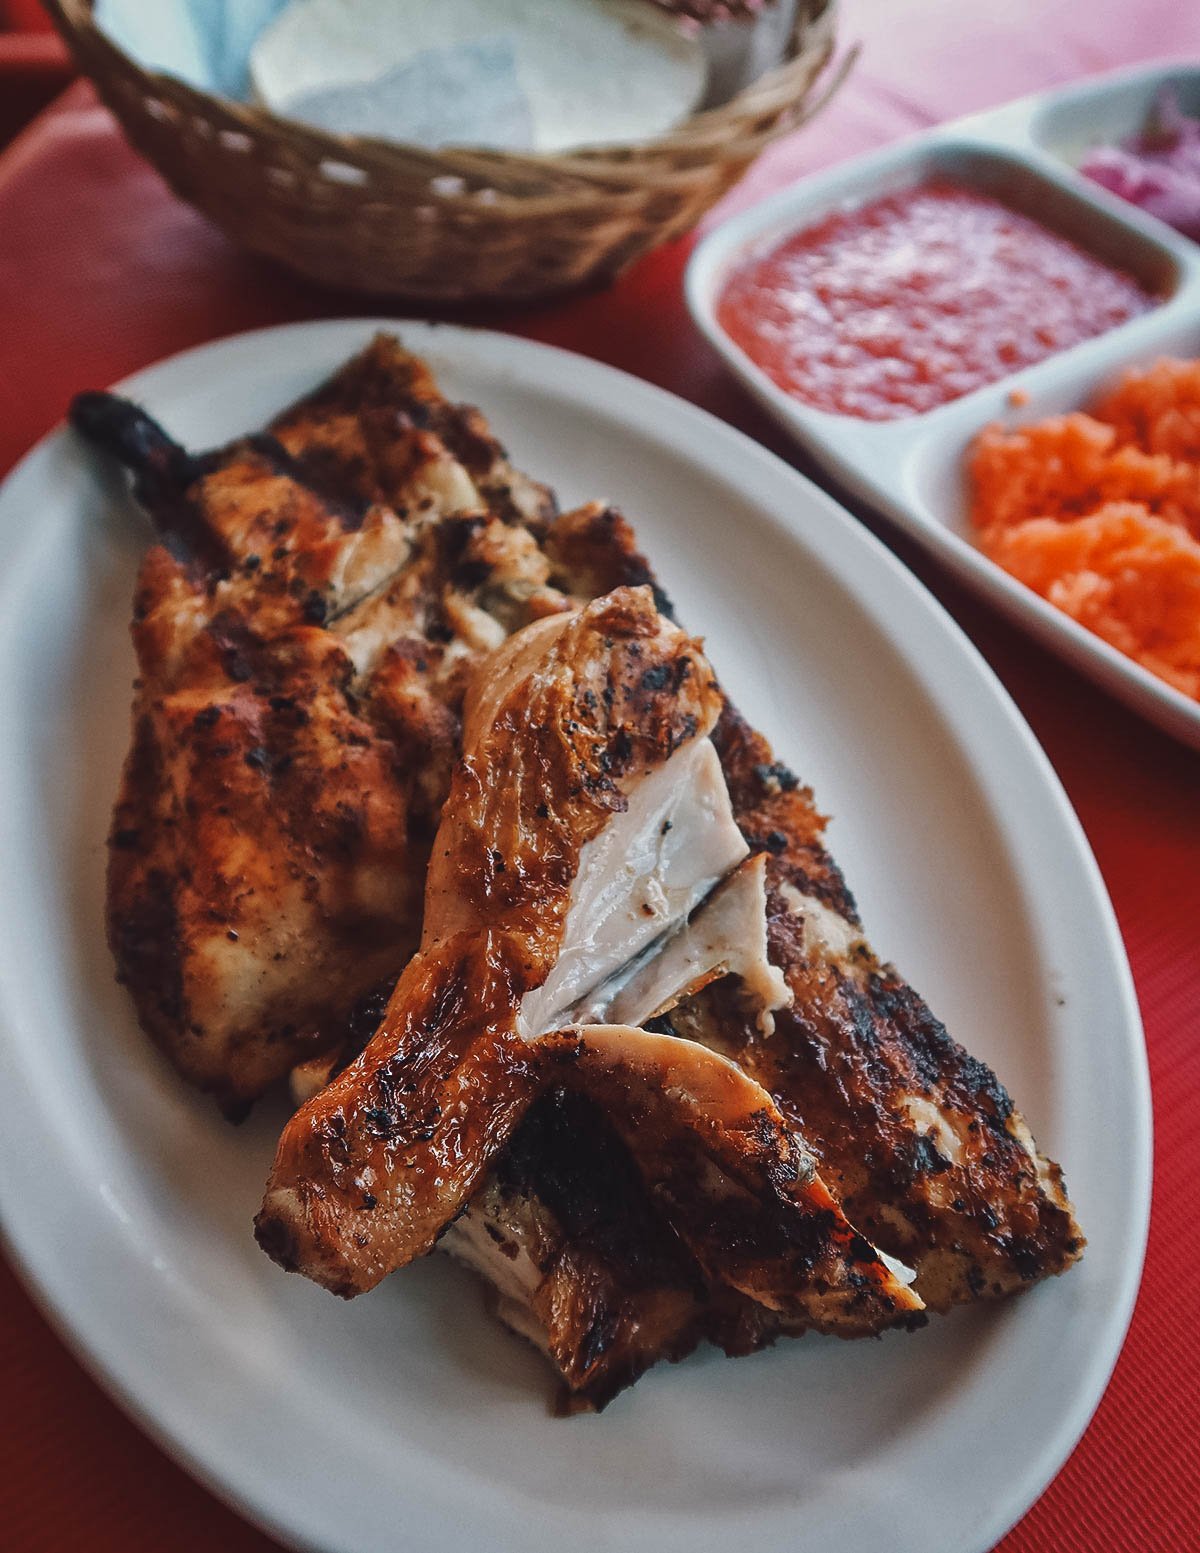 Mexican roast chicken at the Asadero El Pollo restaurant in Playa del Carmen